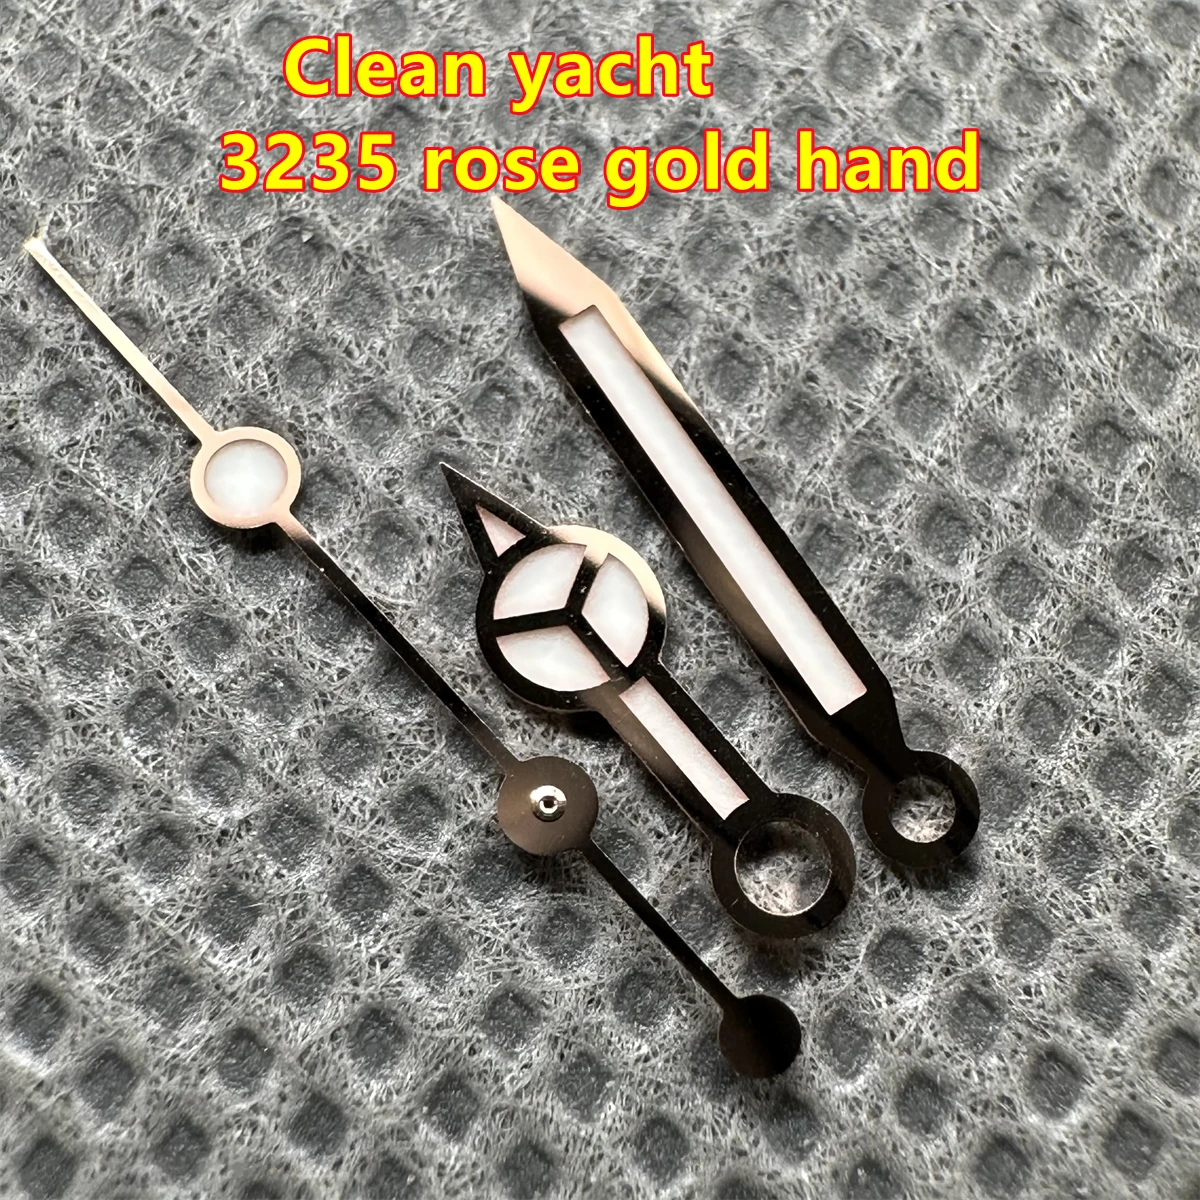 Ручные части заводских часов высшего качества из чистого розового золота yacht 3235 3135 механизм Blue Luminou 126655 126621 для 40 мм